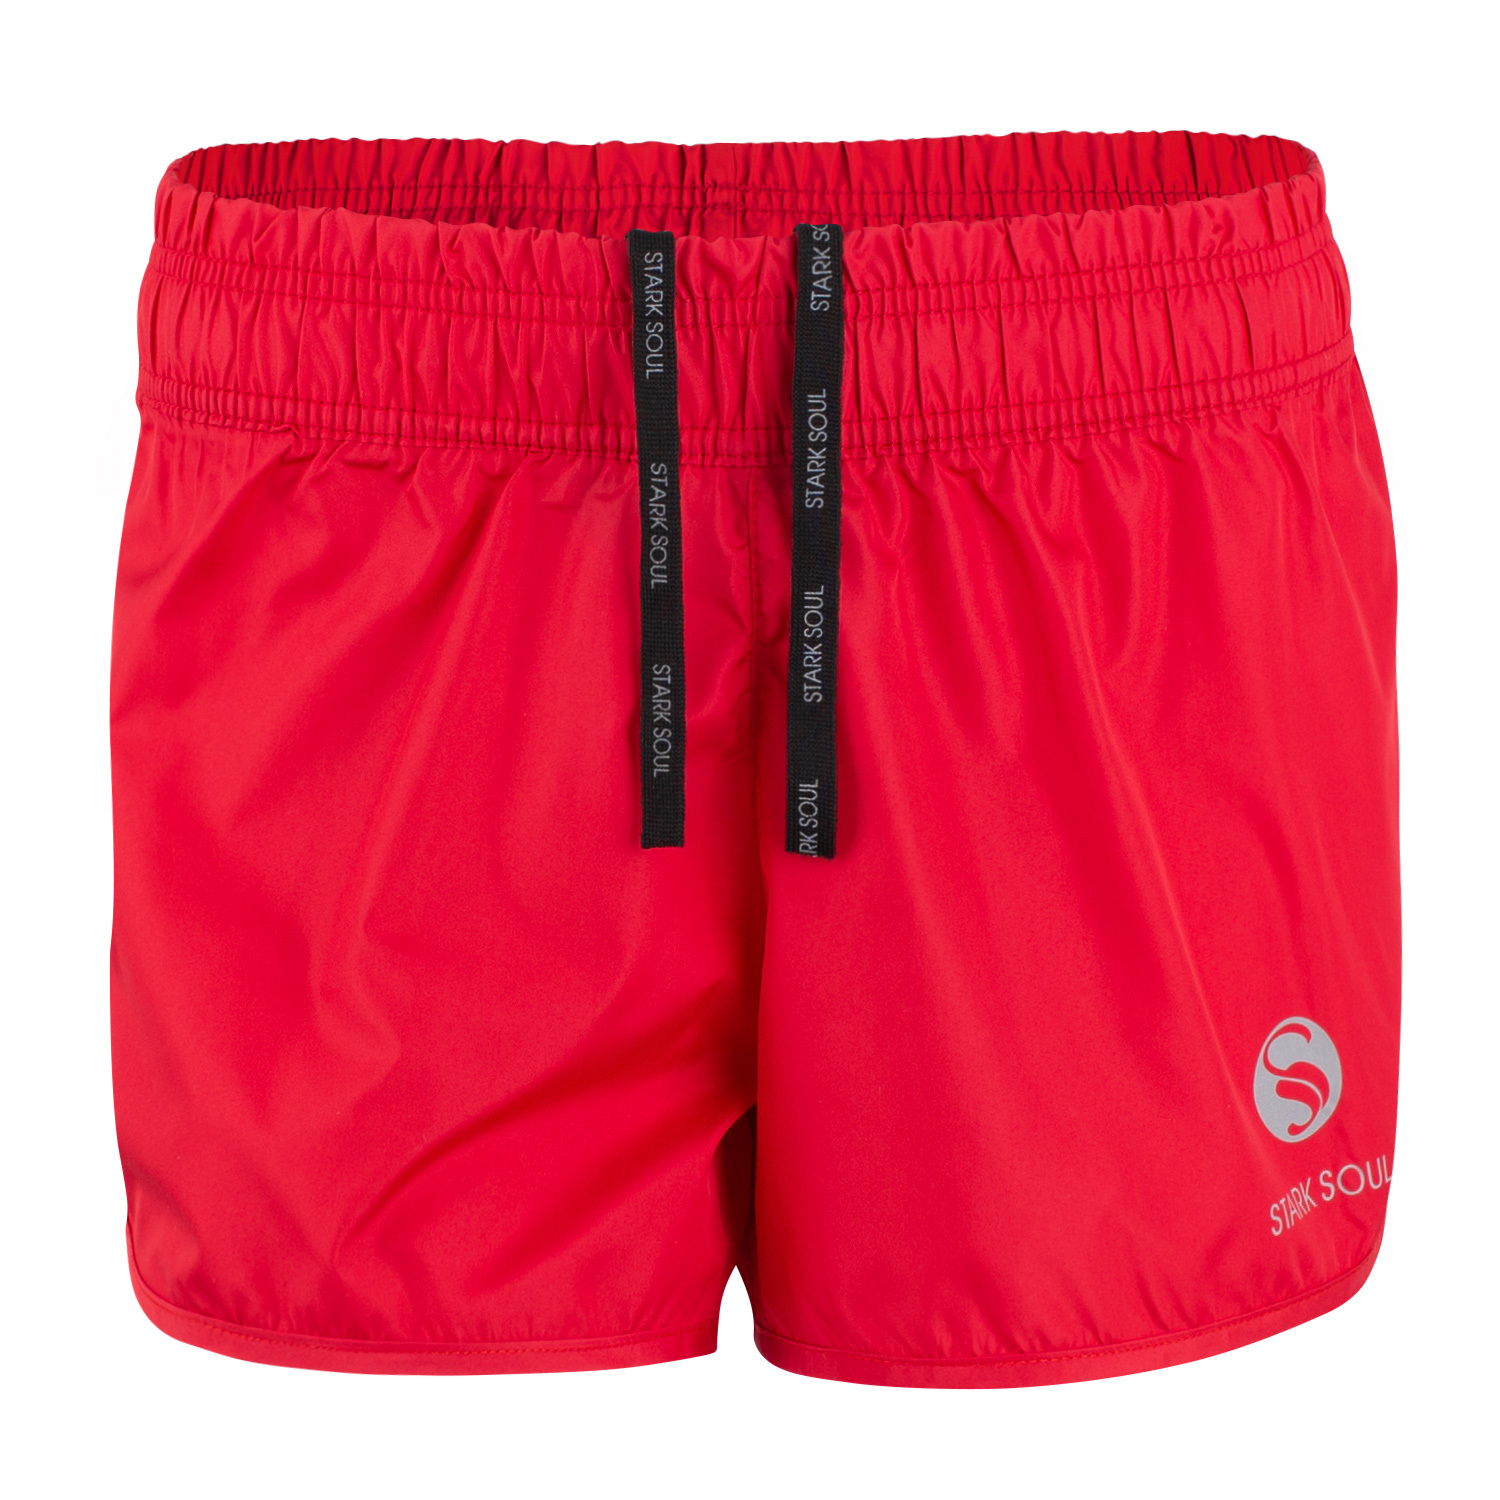 Спортивные брюки Stark Soul Damen Sport Shorts, kurze Sport, красный